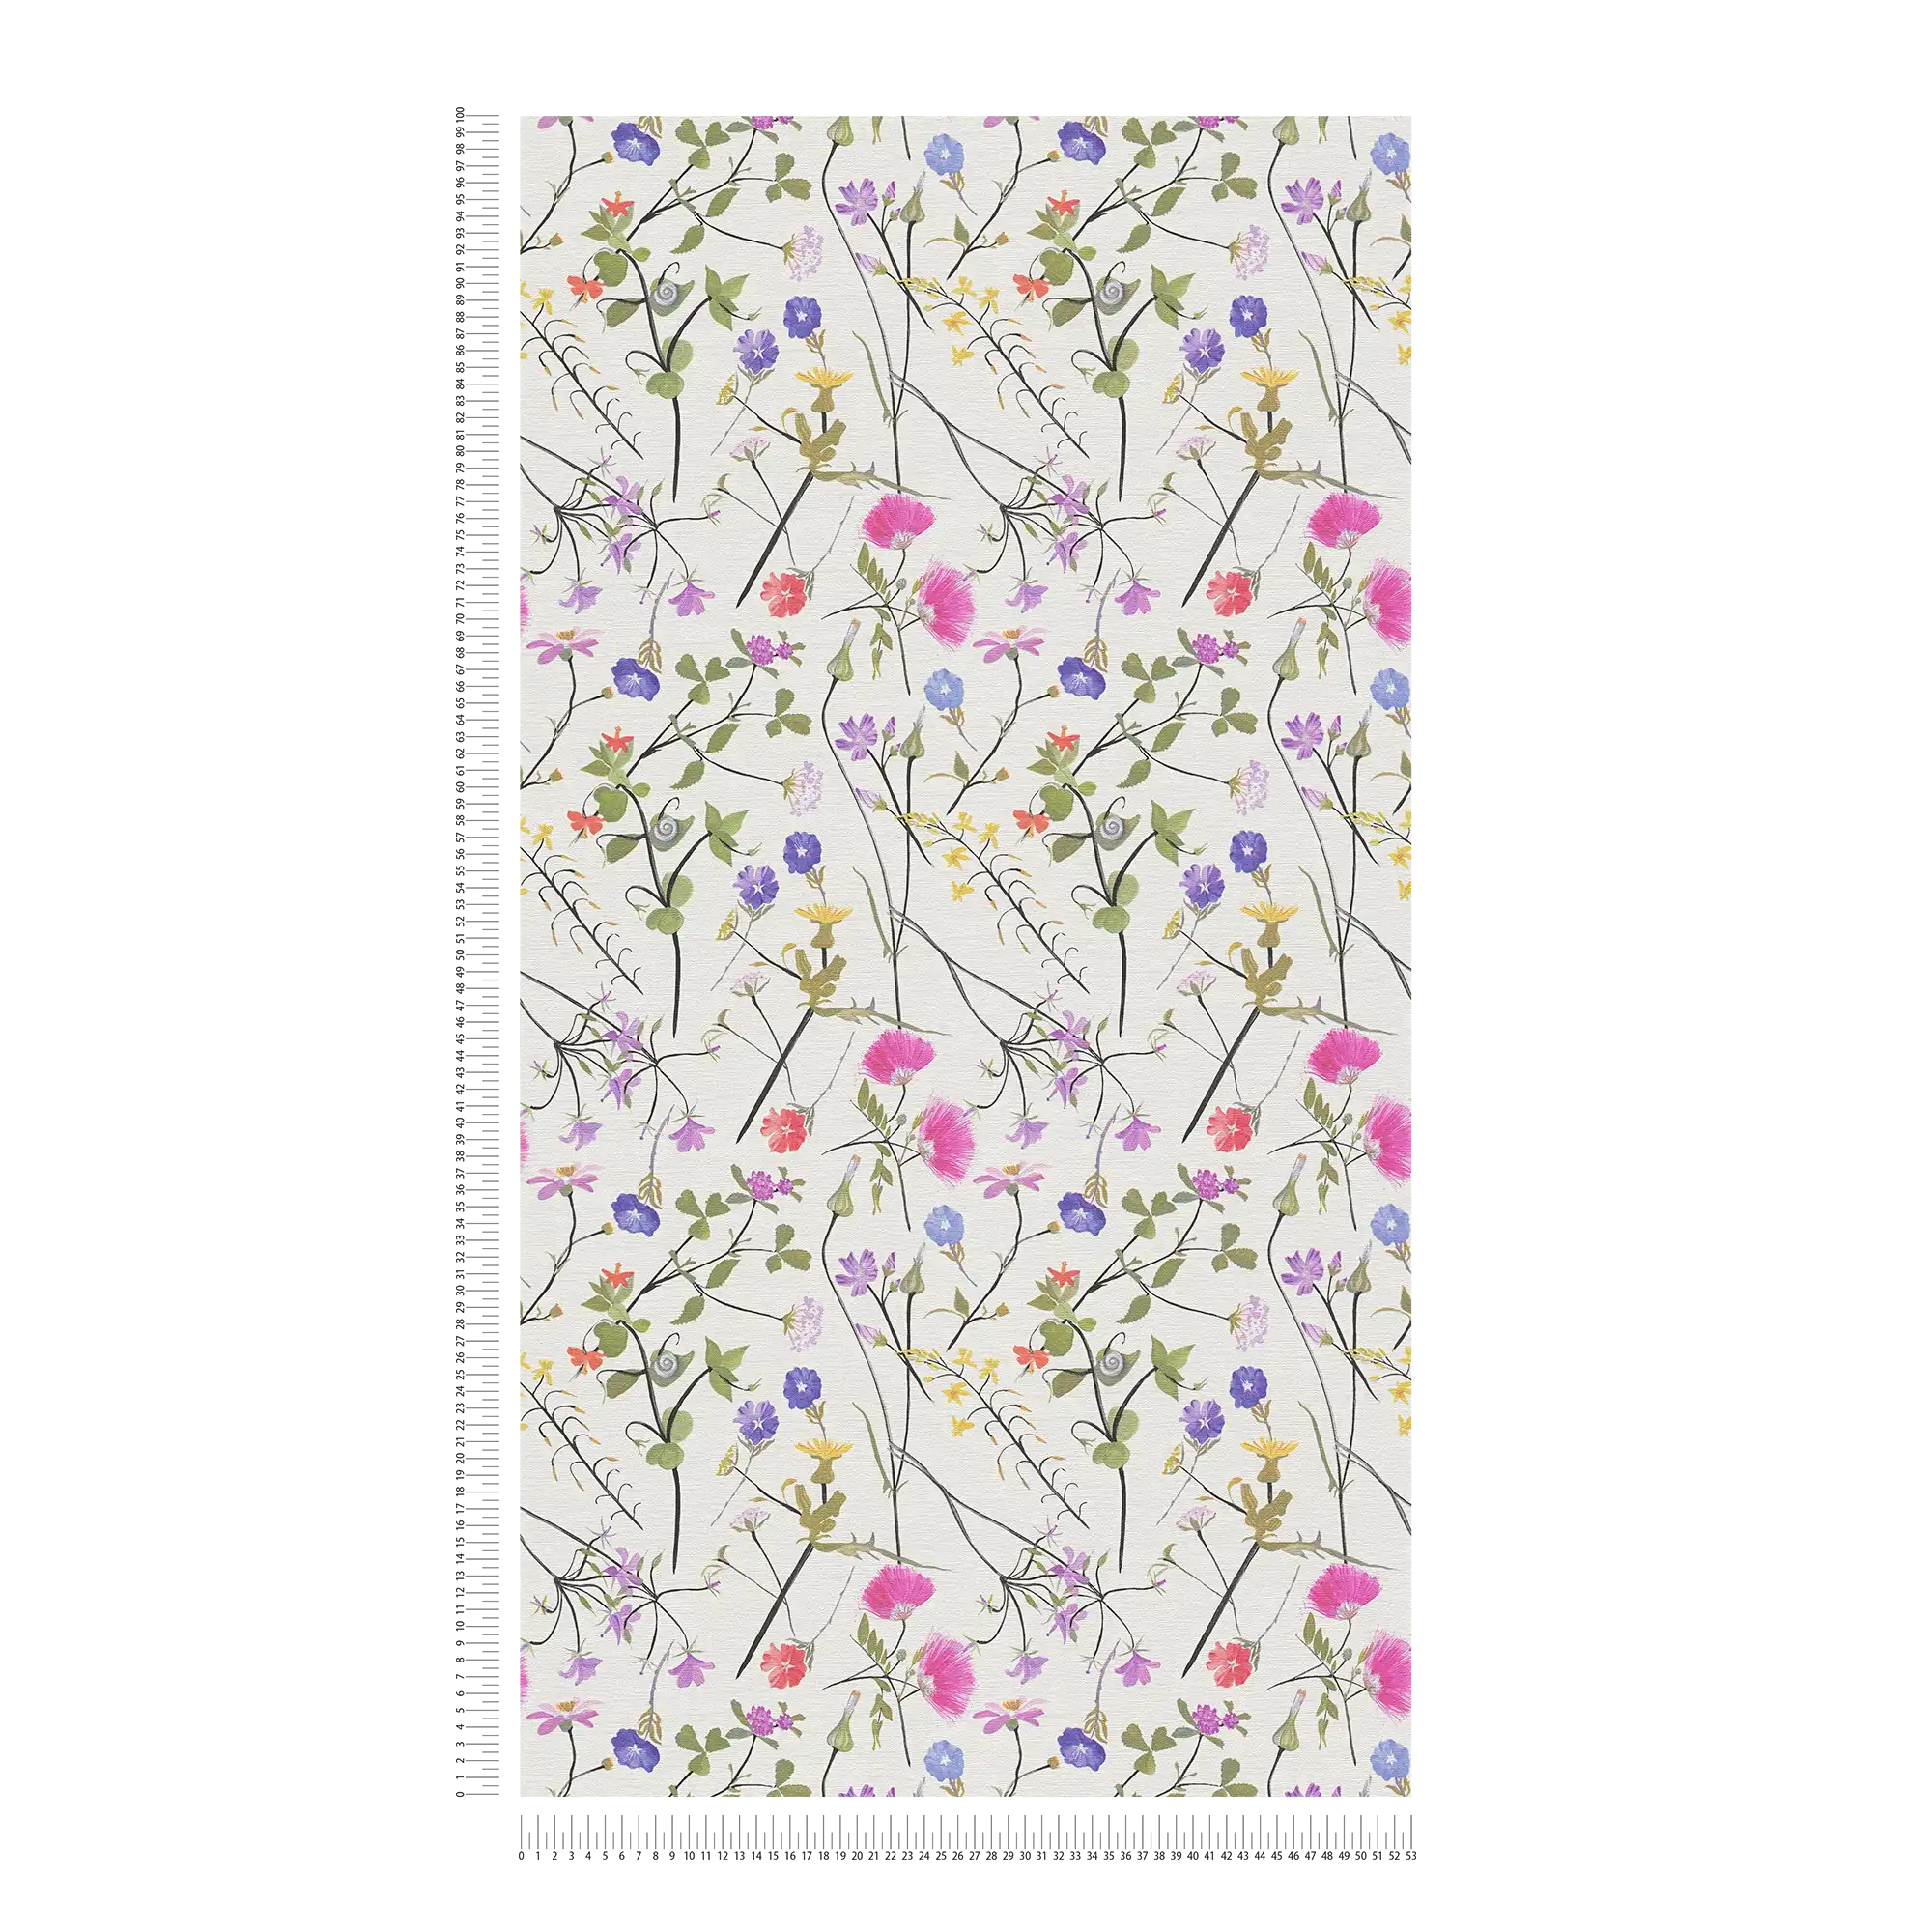             Bloemenbehang met gedetailleerd bloemenpatroon - crème, groen, veelkleurig
        